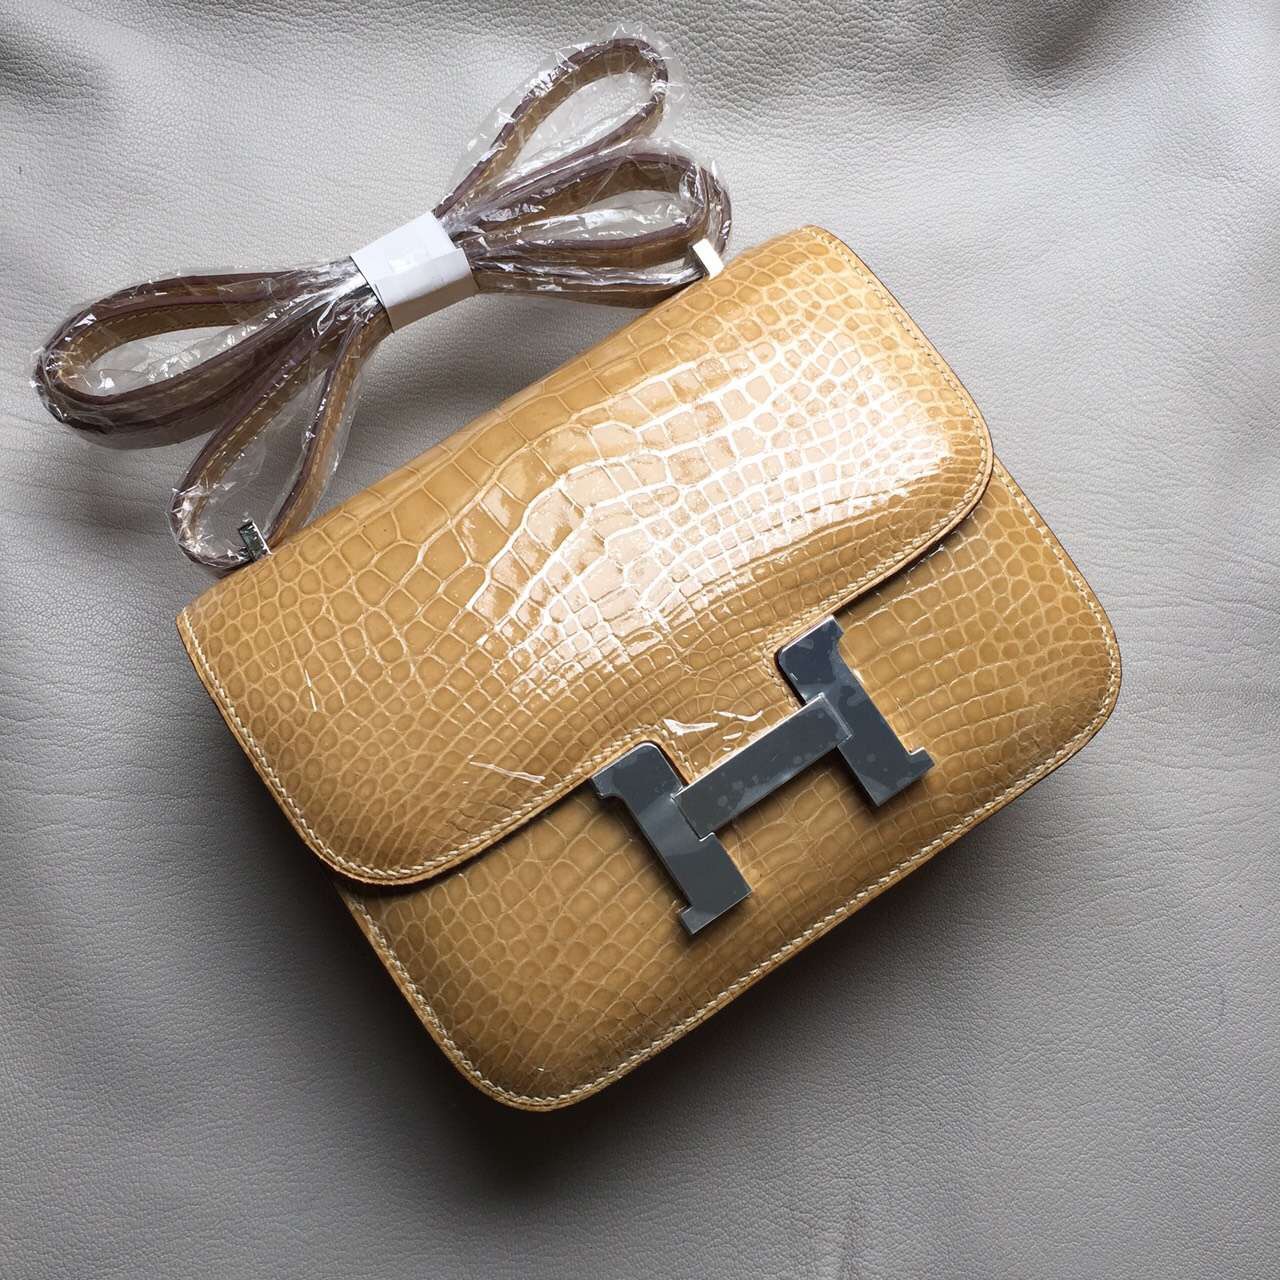 Sale Hermes Apricot Crocodile Shiny Leather Constance Bag19cm